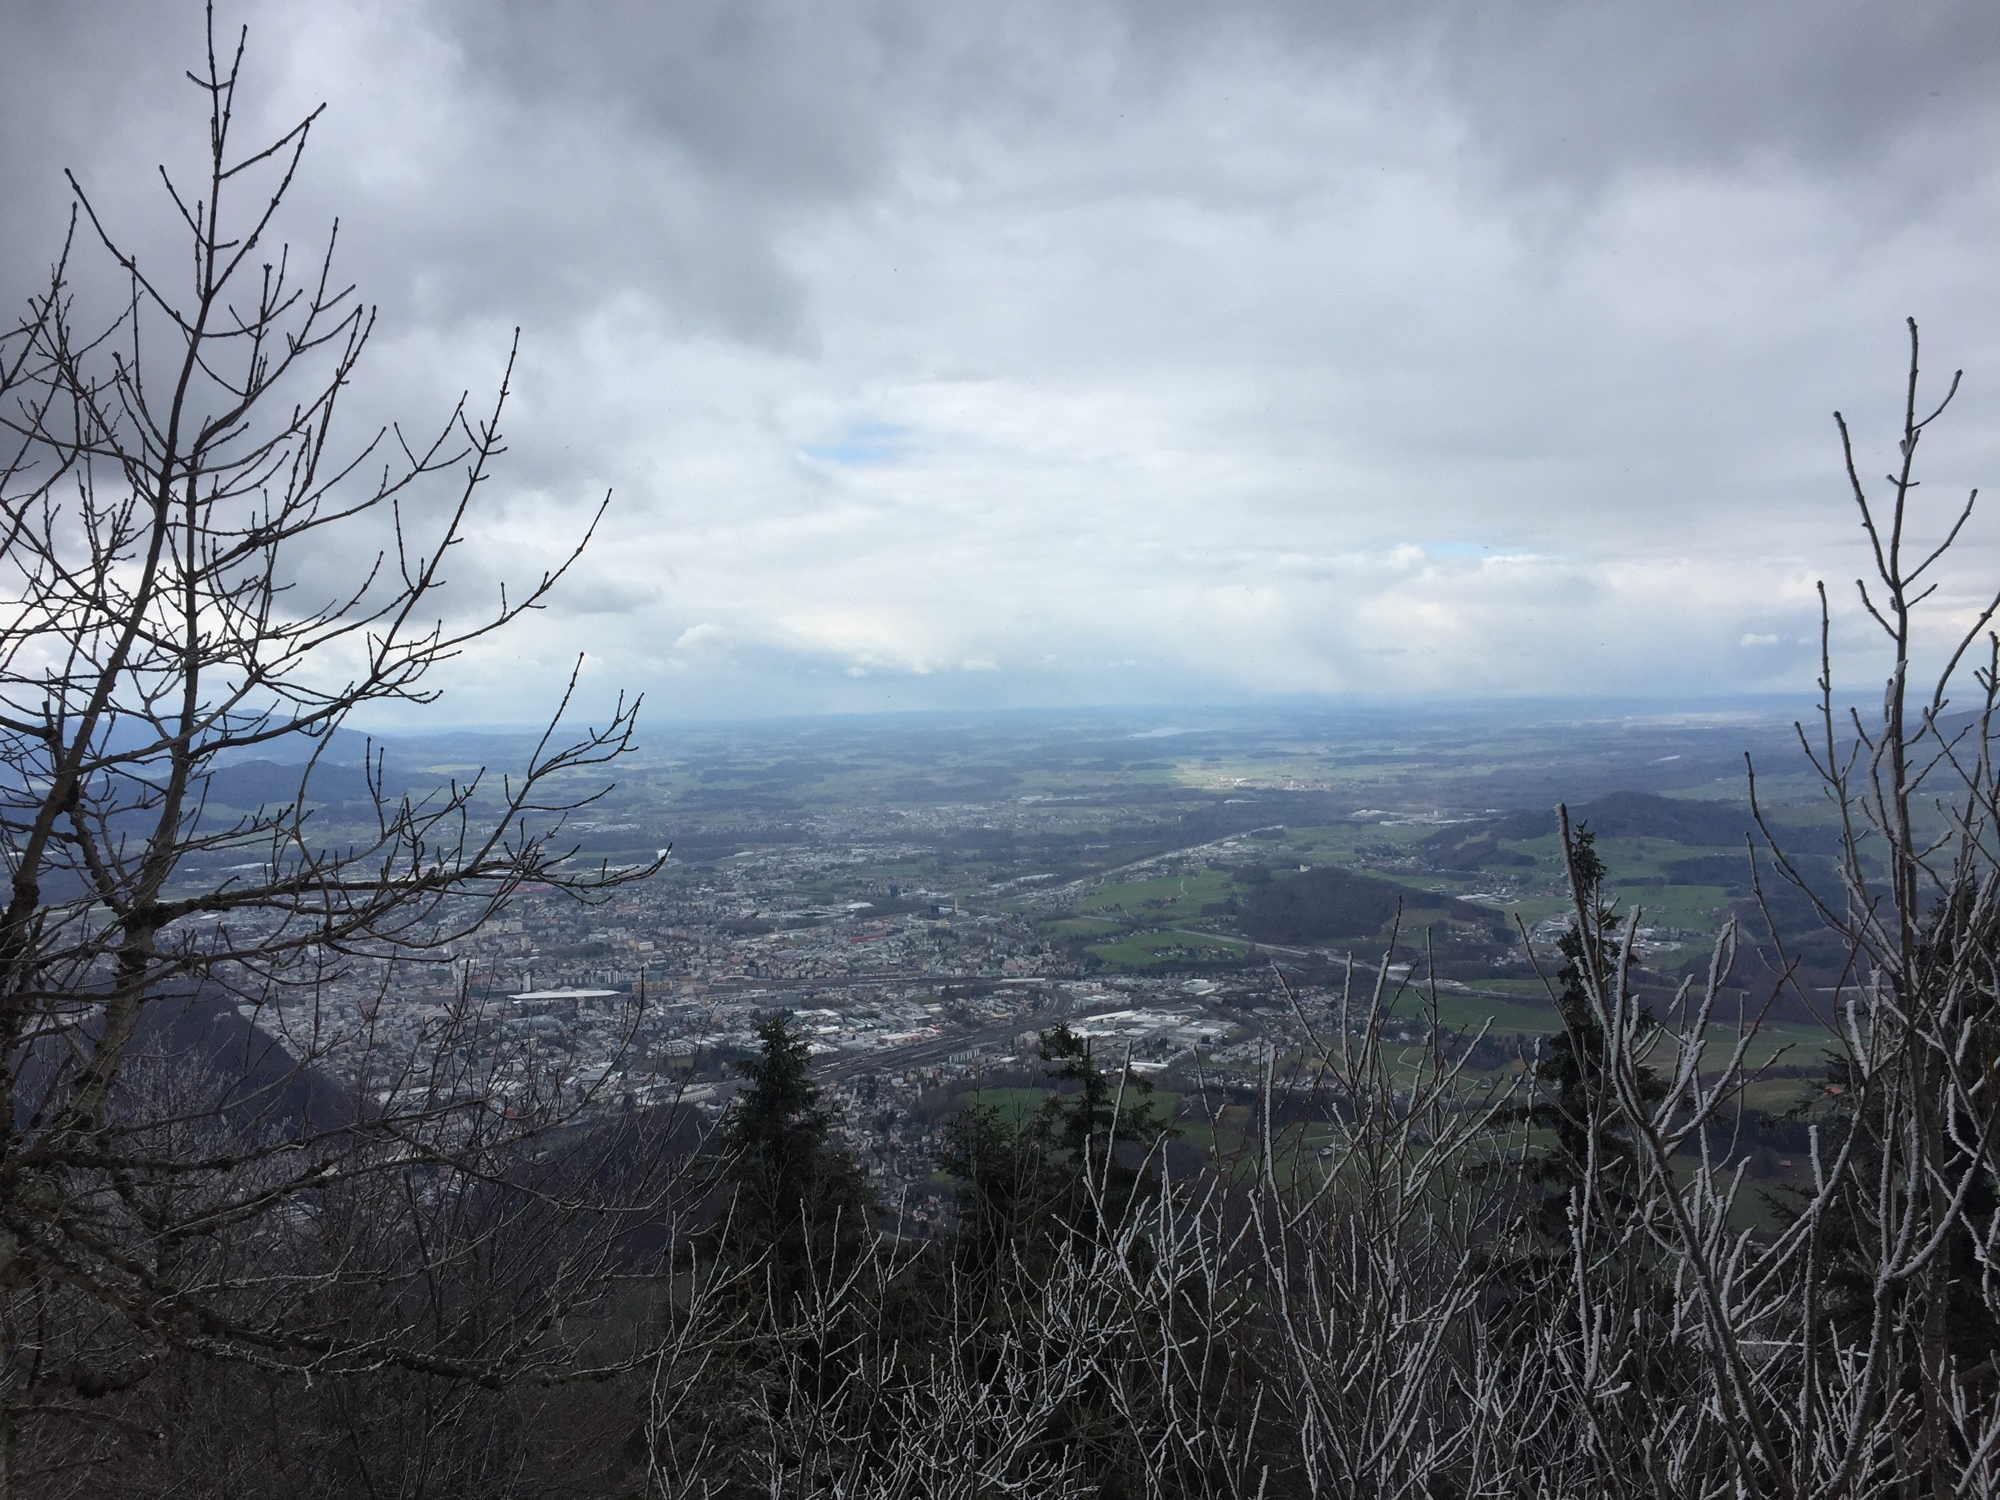 Ausblick auf die Stadt Salzburg von unterhalb des Gaisberg-Senders, mit eisverkrusteter Vegetation im Vordergrund